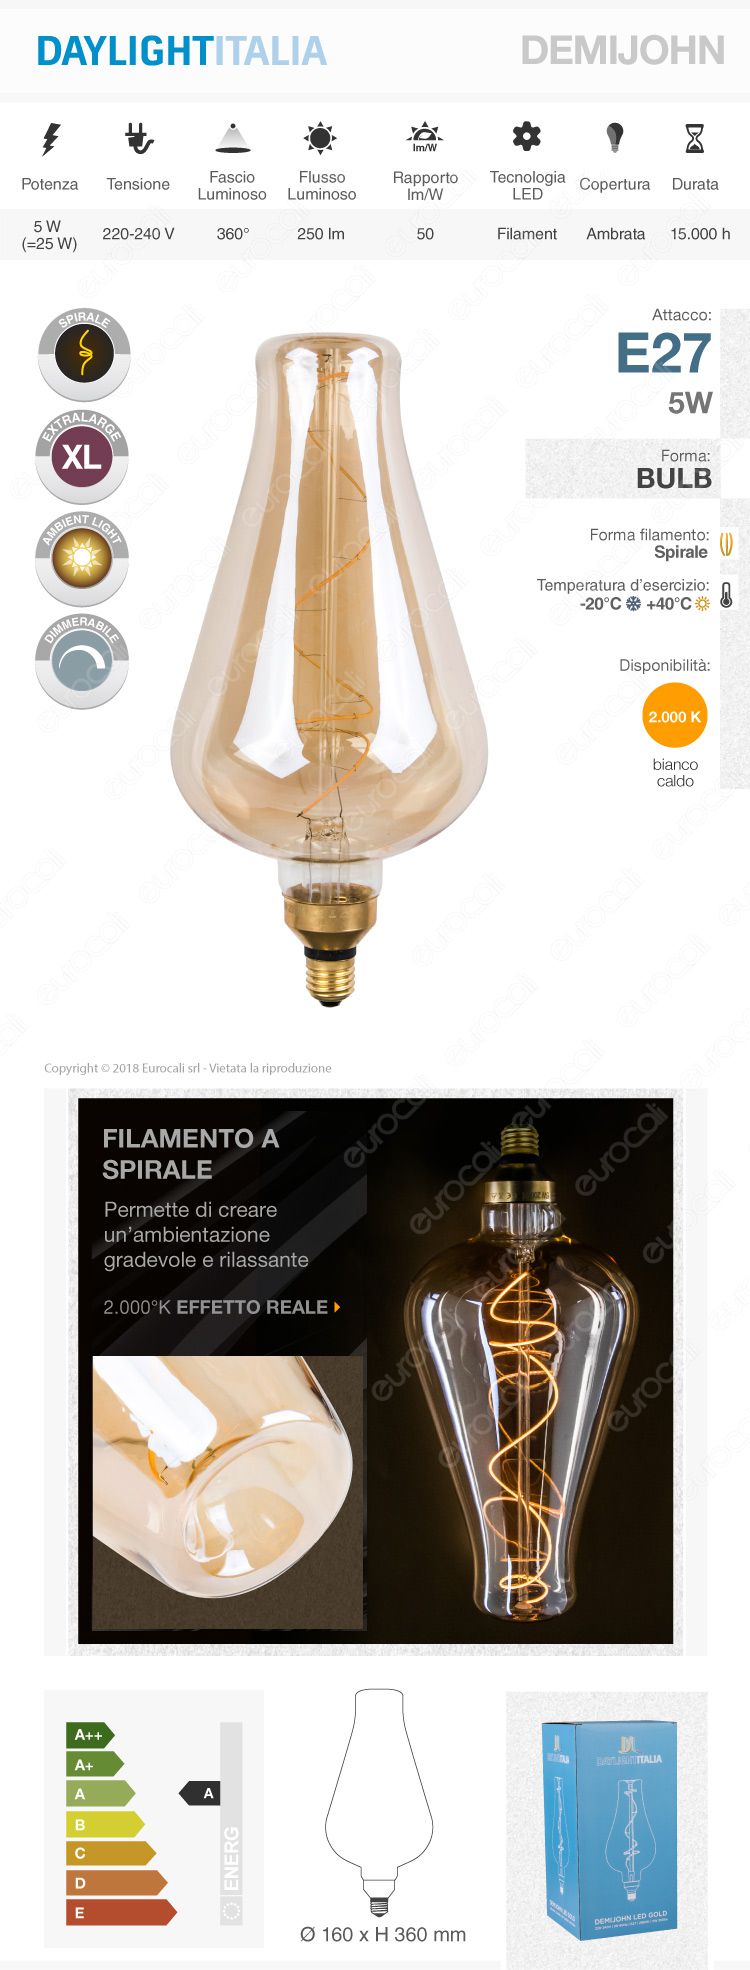 Lampadina E27 Daylight Filamento LED a Spirale 5W Bulb con Vetro Ambrato Dimmerabile